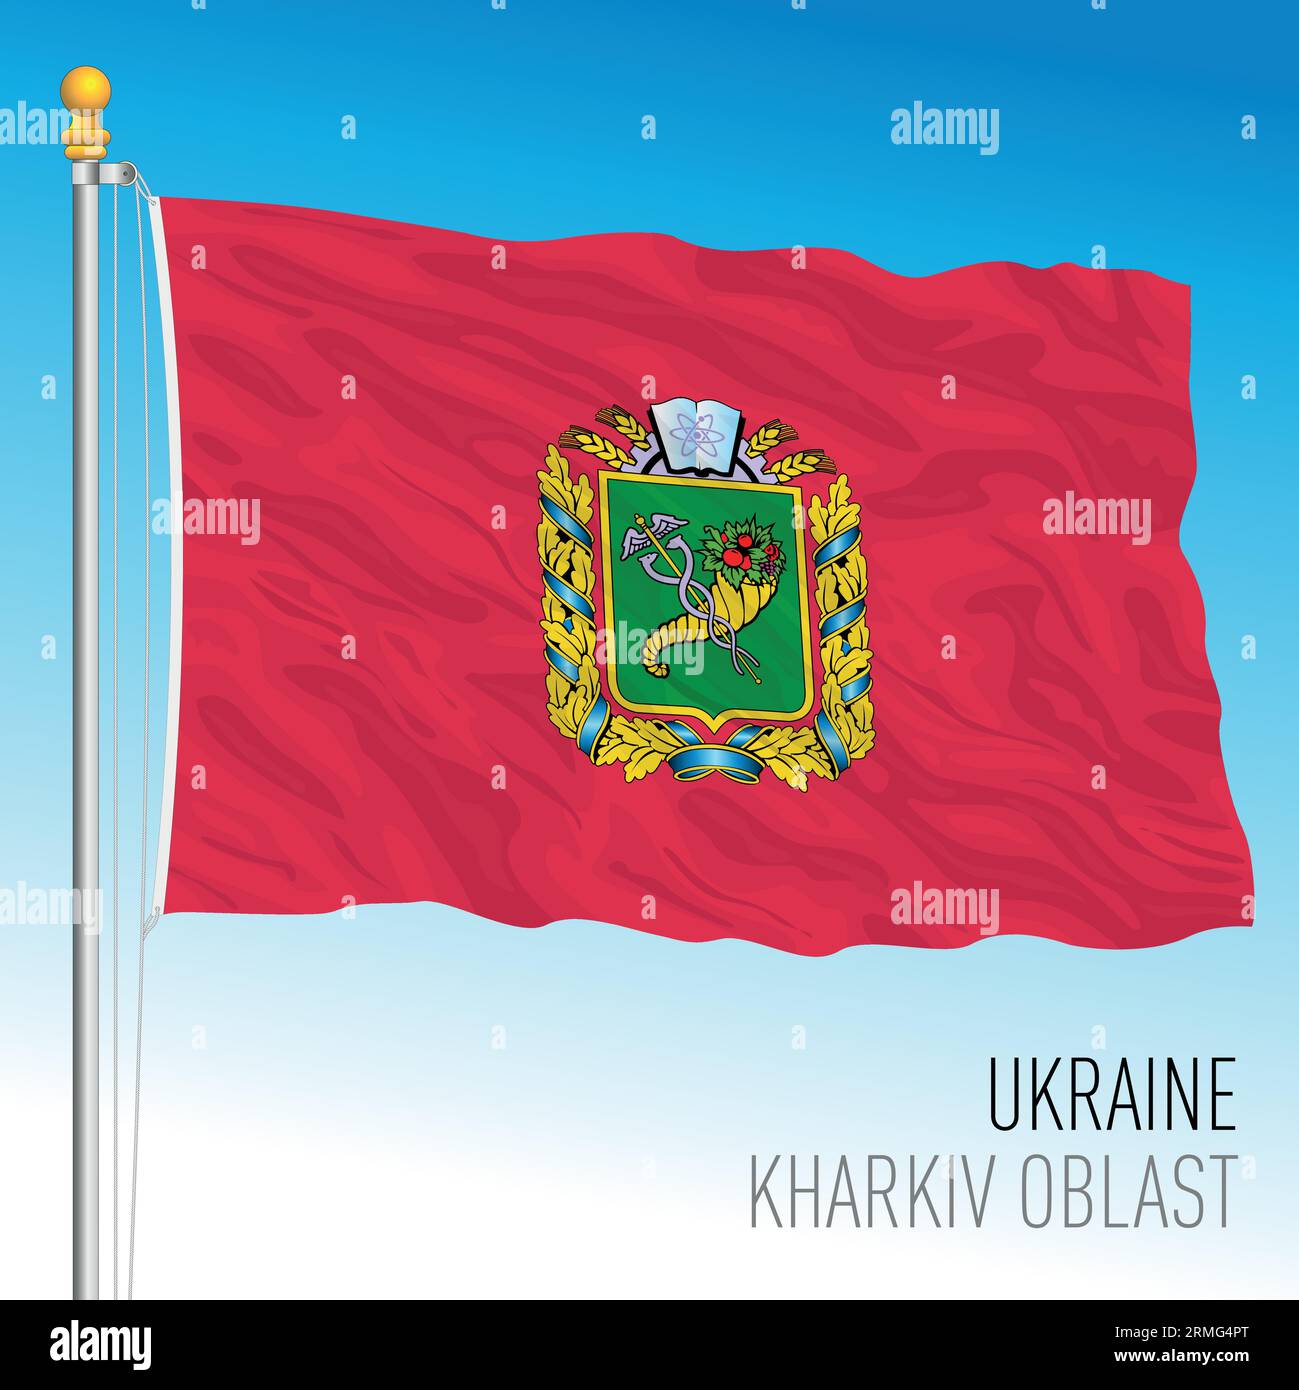 Ukraine, Kharkiv Oblast waving flag, europe, vector illustration Stock Vector